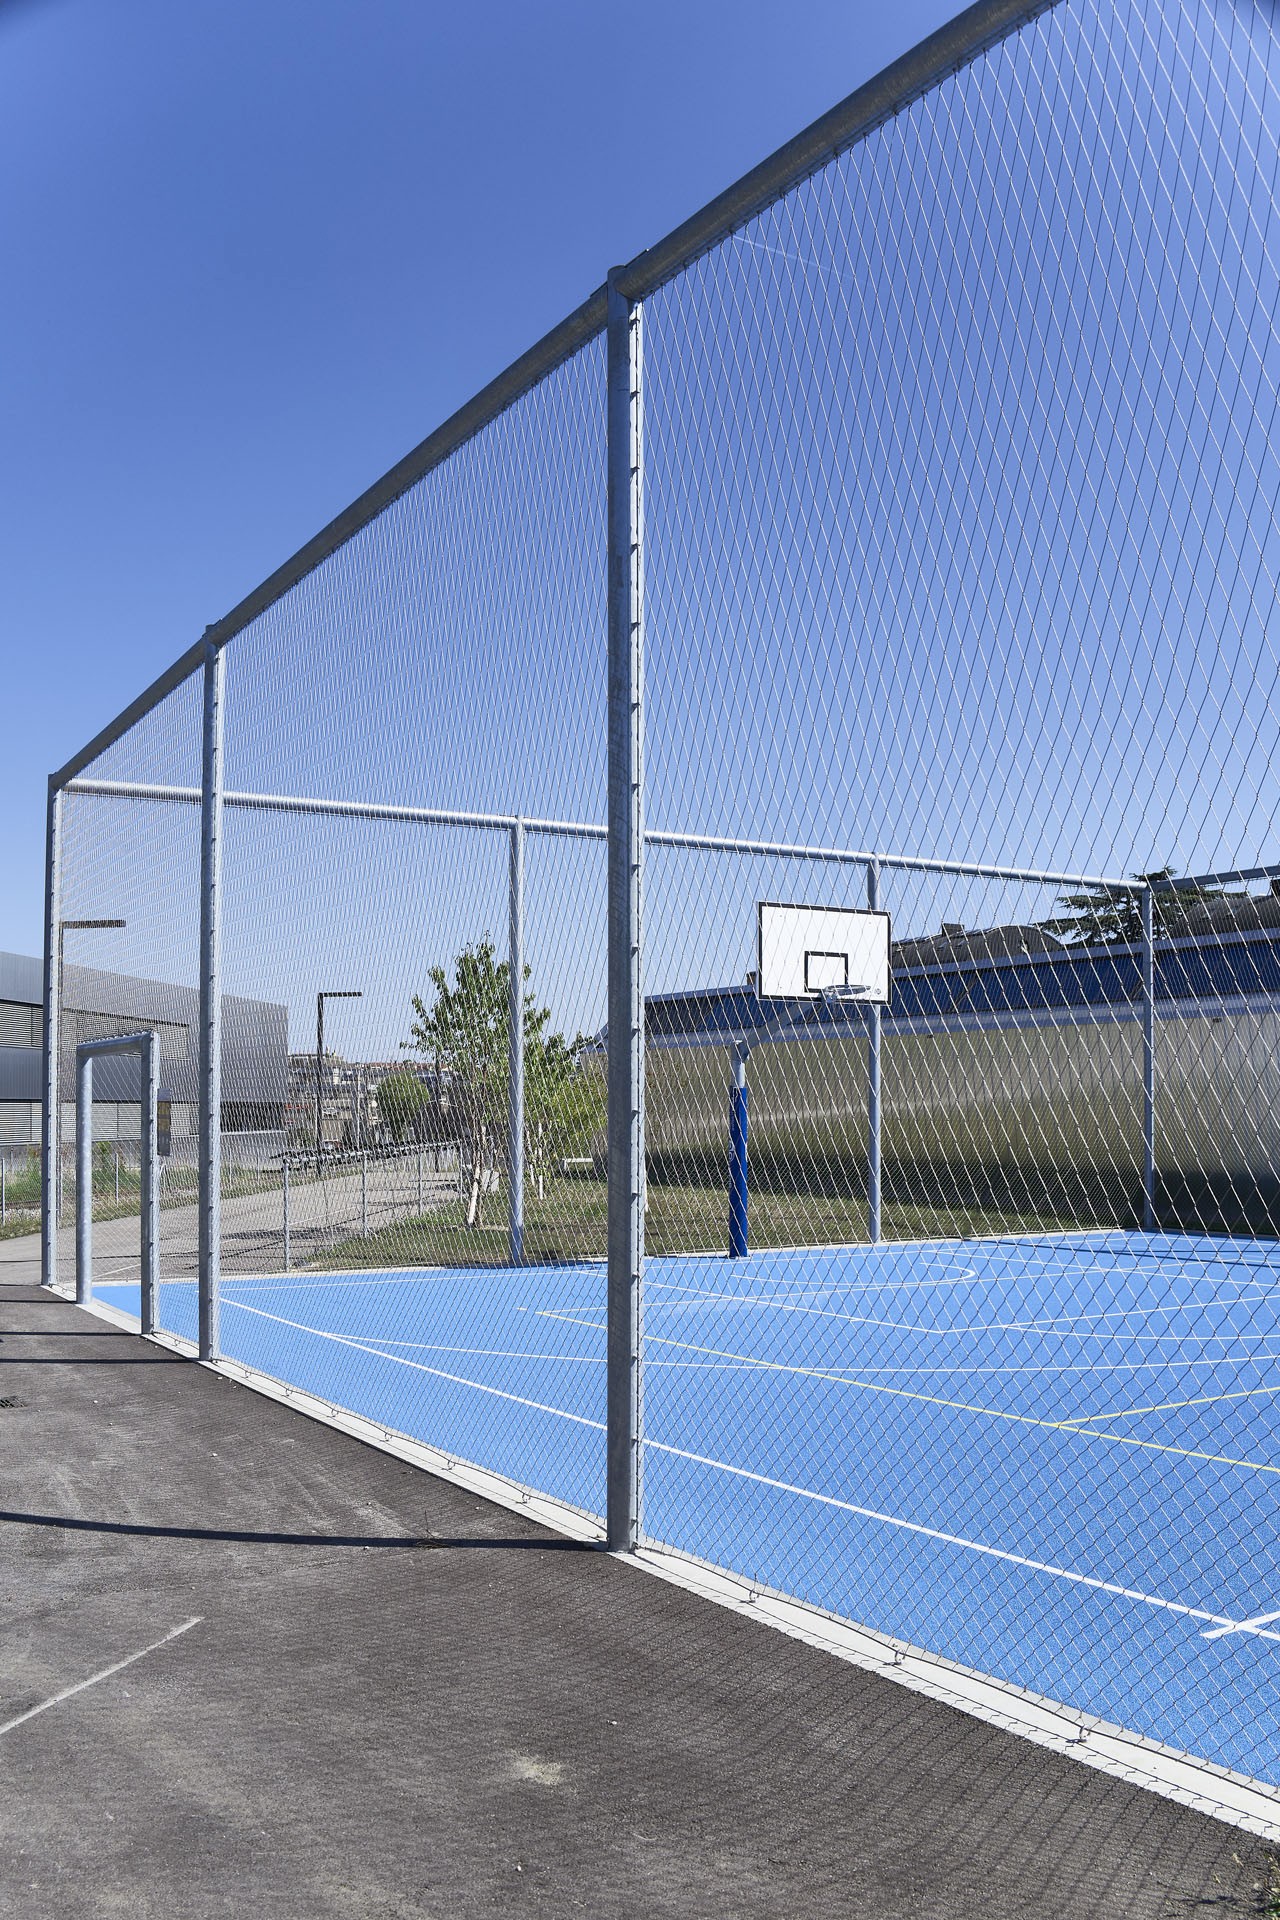 Drahtseilnetz an Basketballplatz